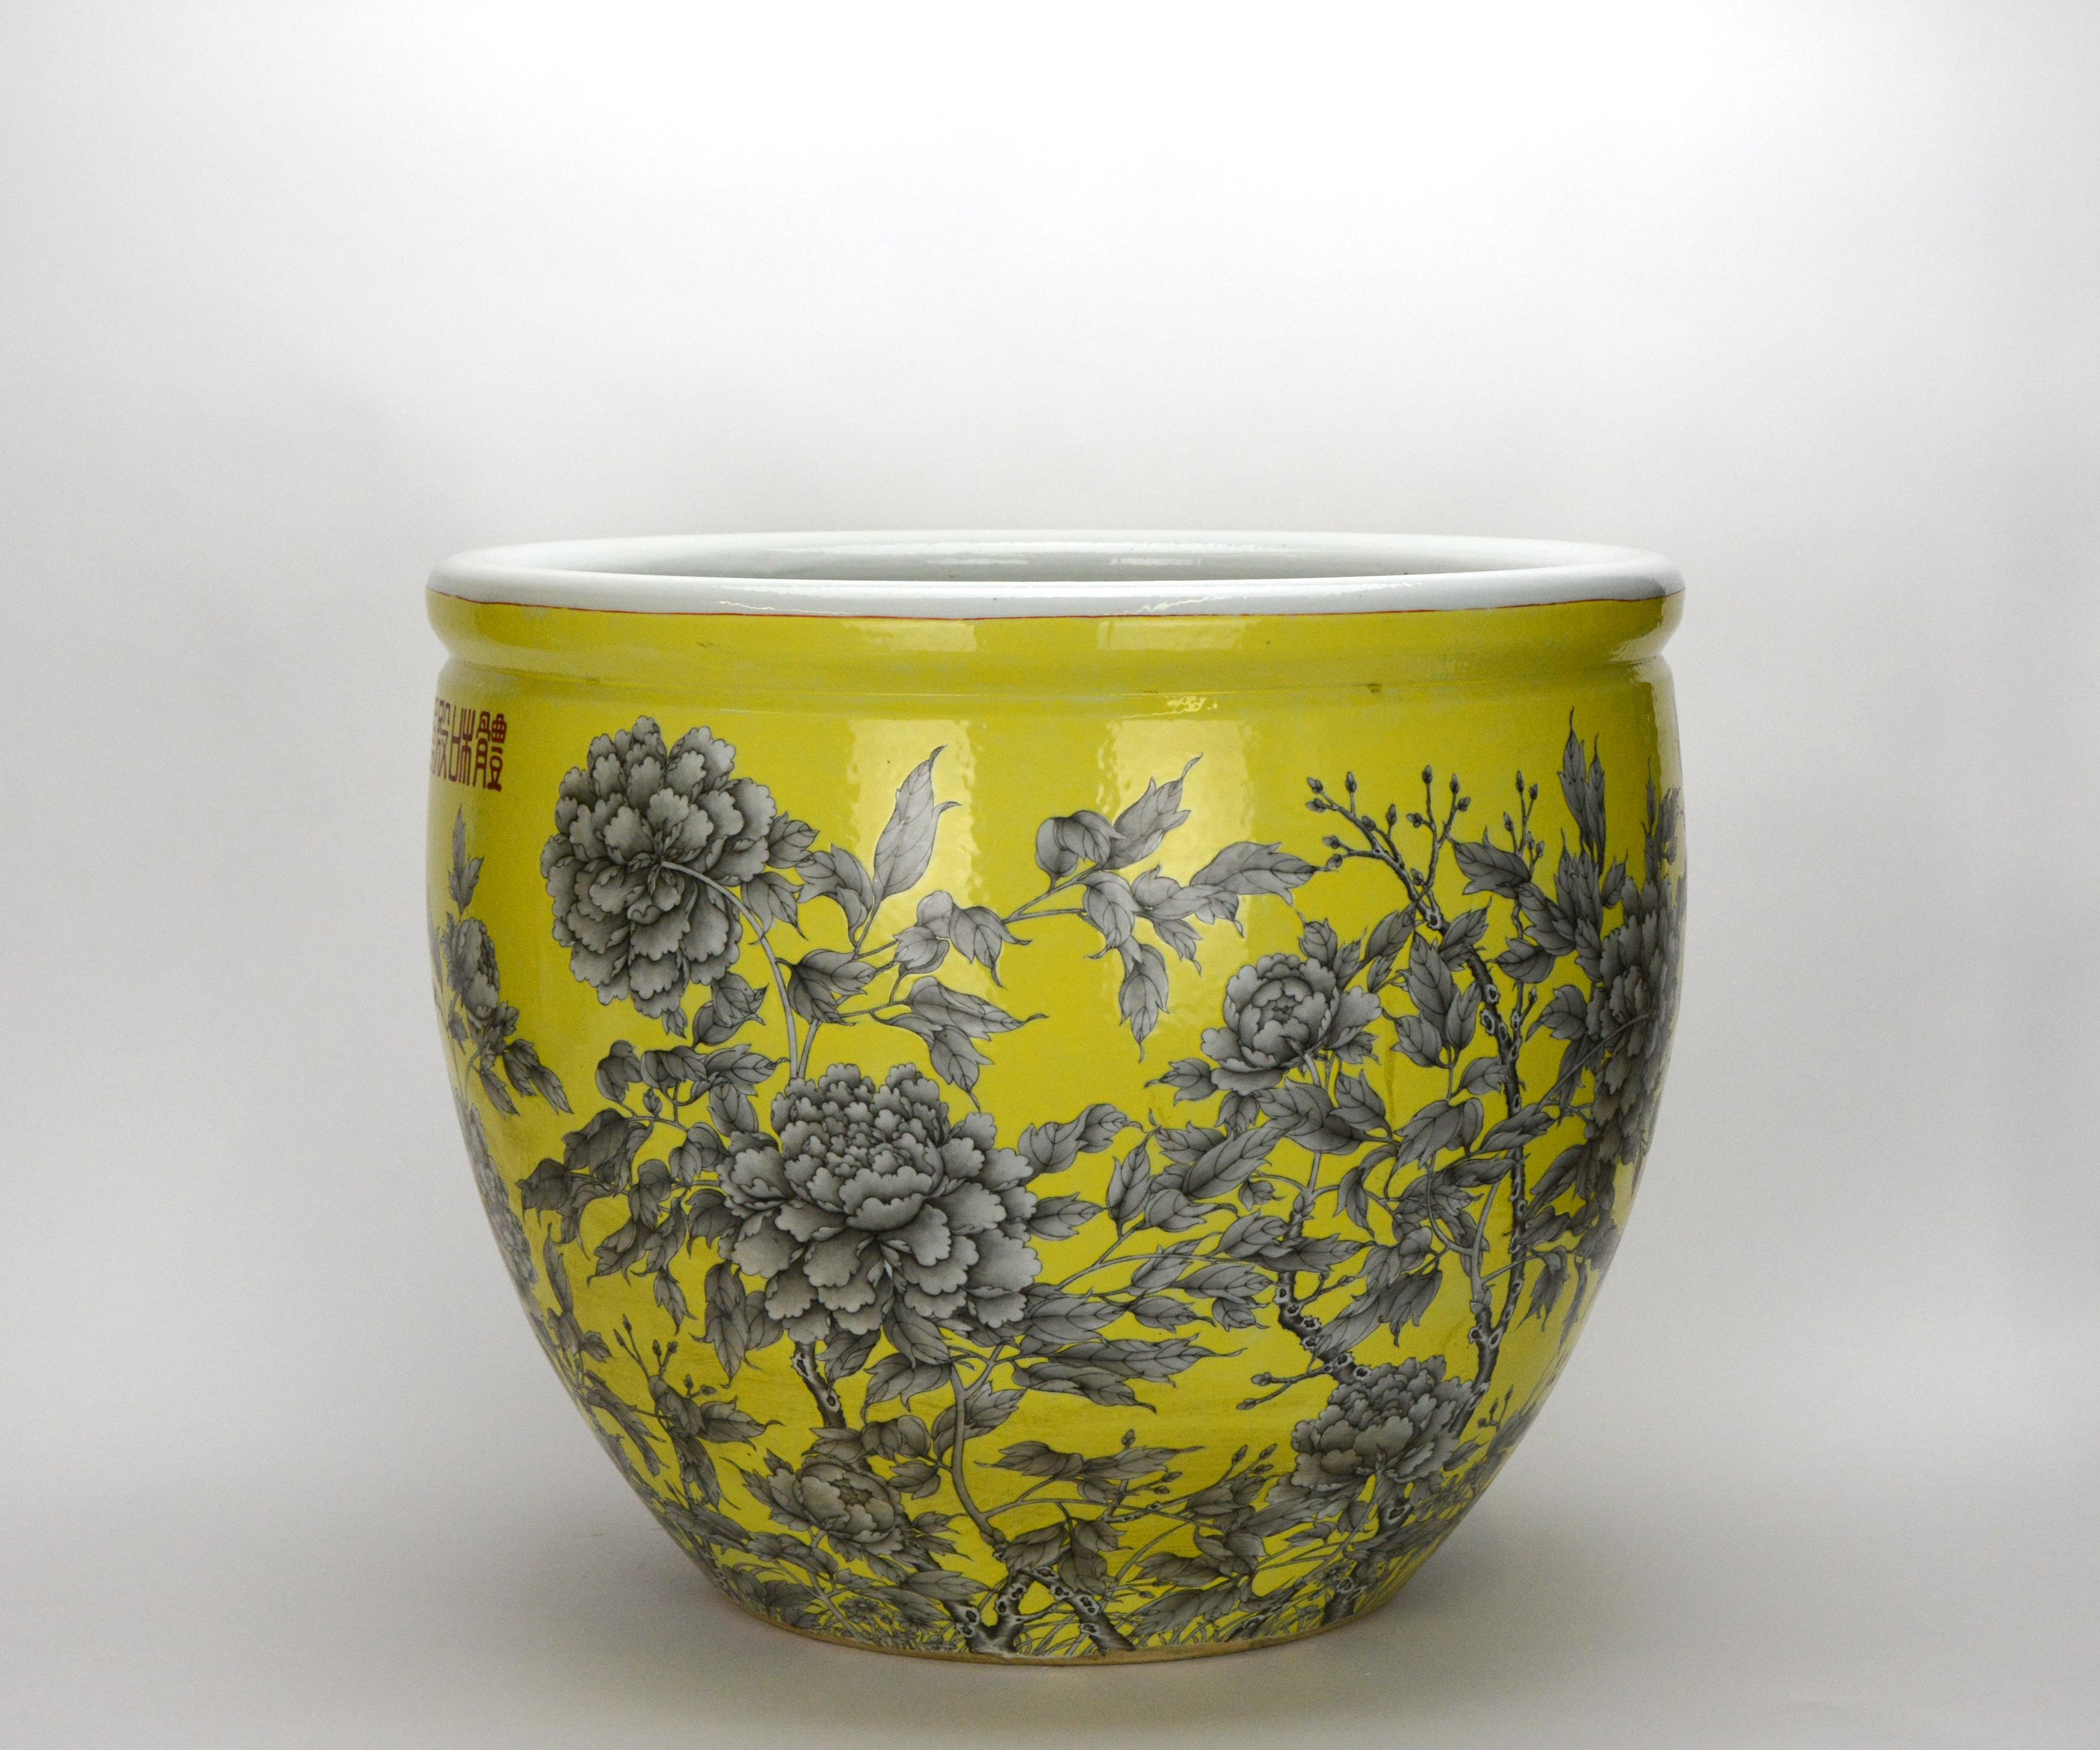 Hier ist eine seltene gelb grundierte schwarze Blumen Porzellan Jardiniere aus der späten Qing-Zeit. Die gesamte Jardiniere hat einen gelben Grund mit schwarzer Tinte wie Blumenmalerei. Ein sehr großer, kugelförmiger Körper mit weißem Email im